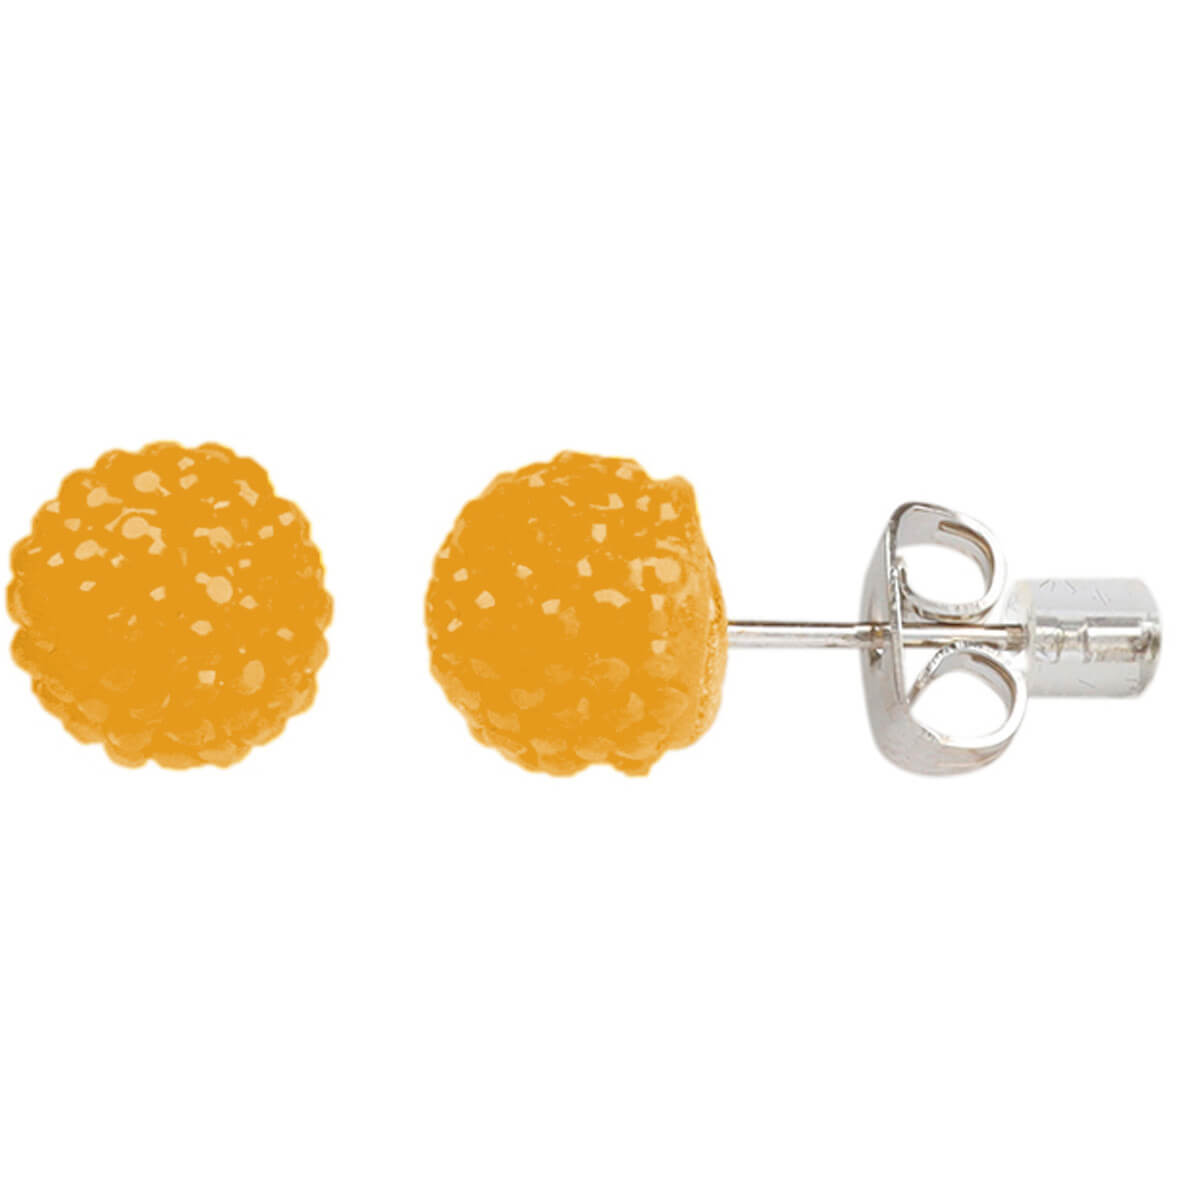 Shiny ball earrings 8mm